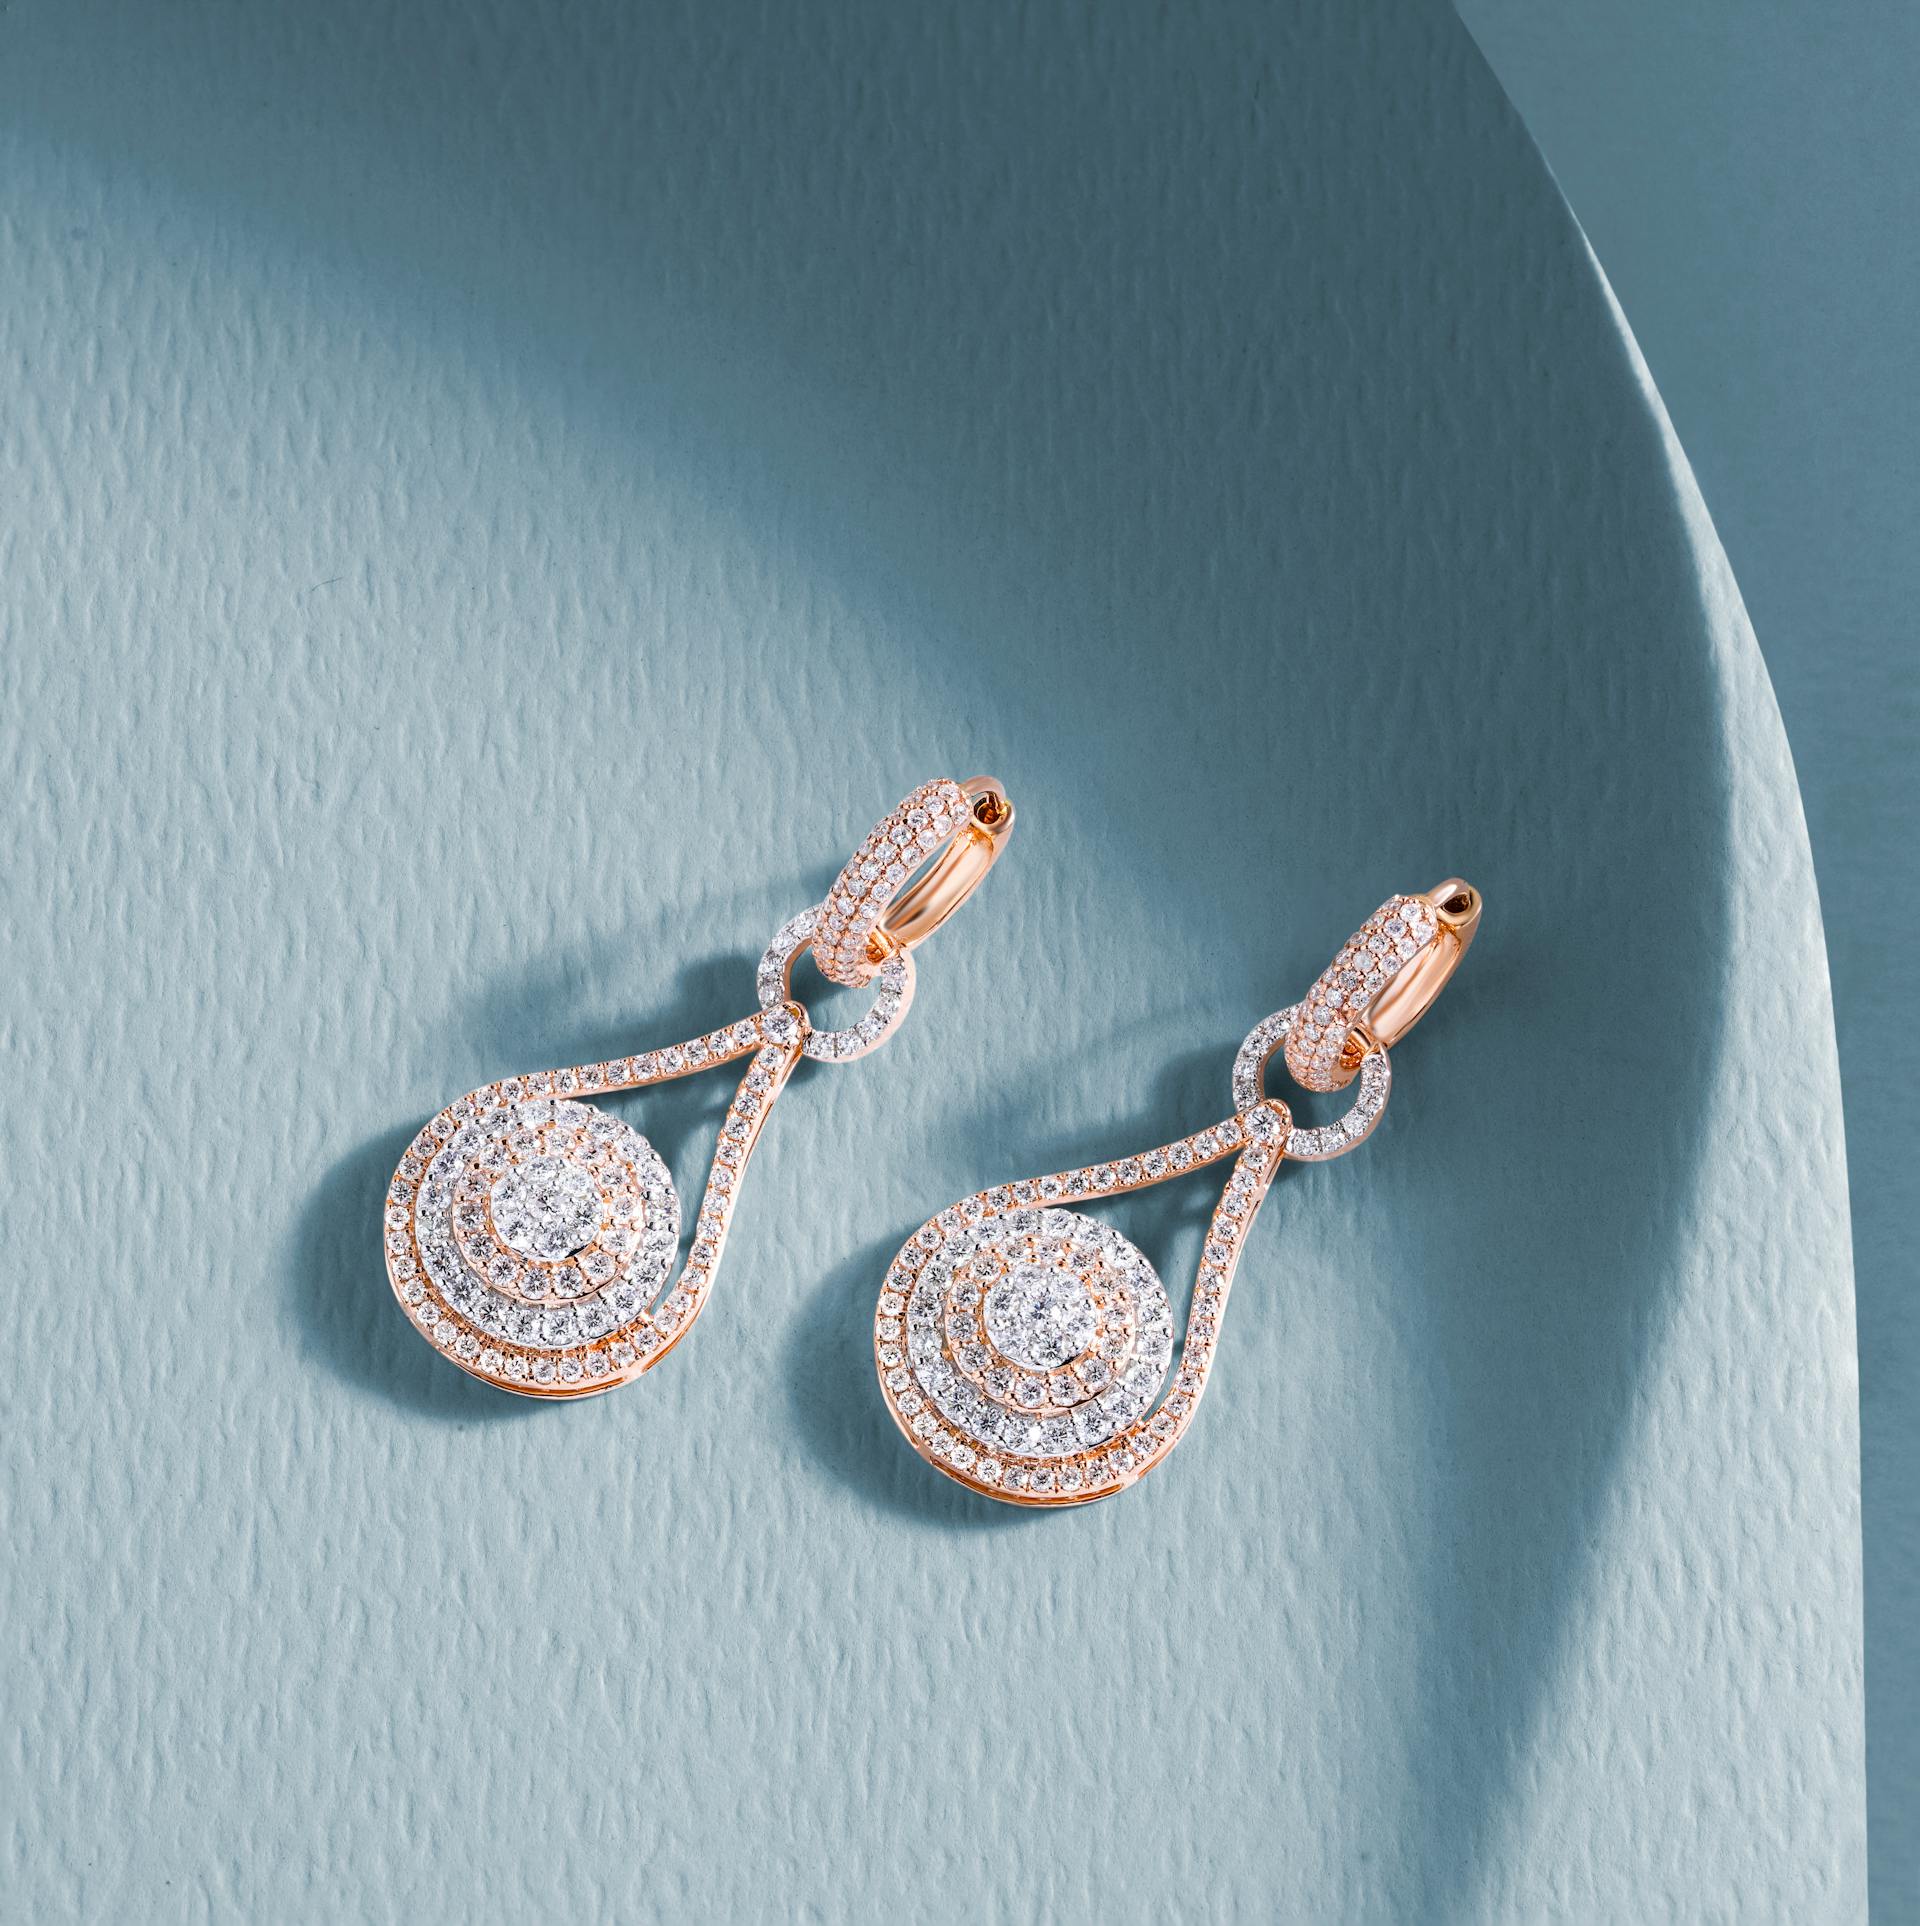 Ein Paar Diamant-Ohrringe | Quelle: Pexels